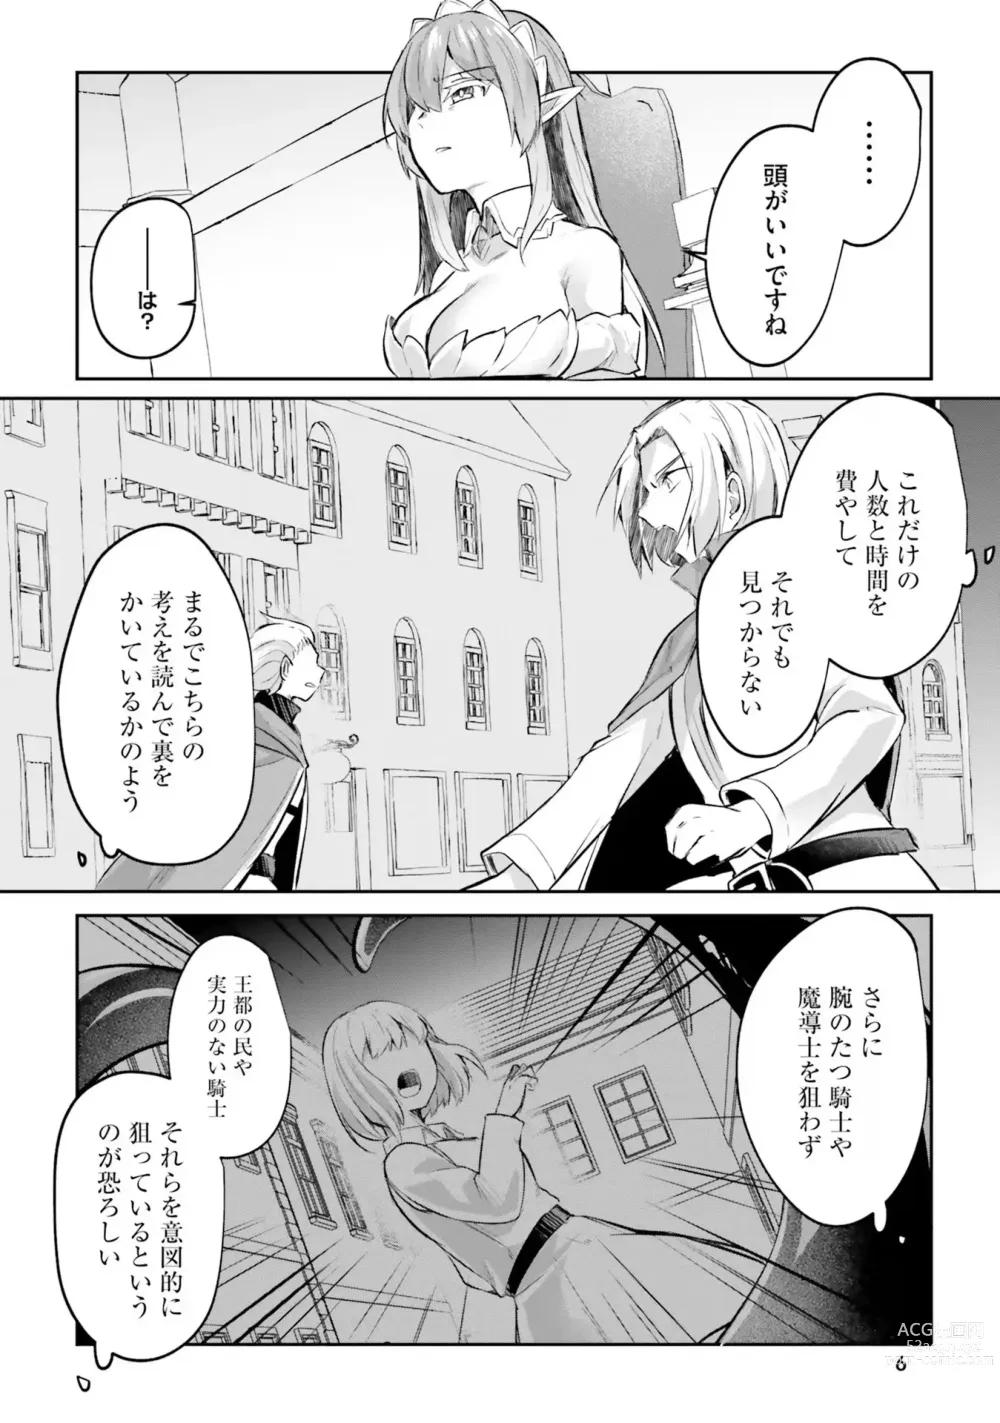 Page 8 of manga Inbi na Doukutsu no Sono Oku de 4